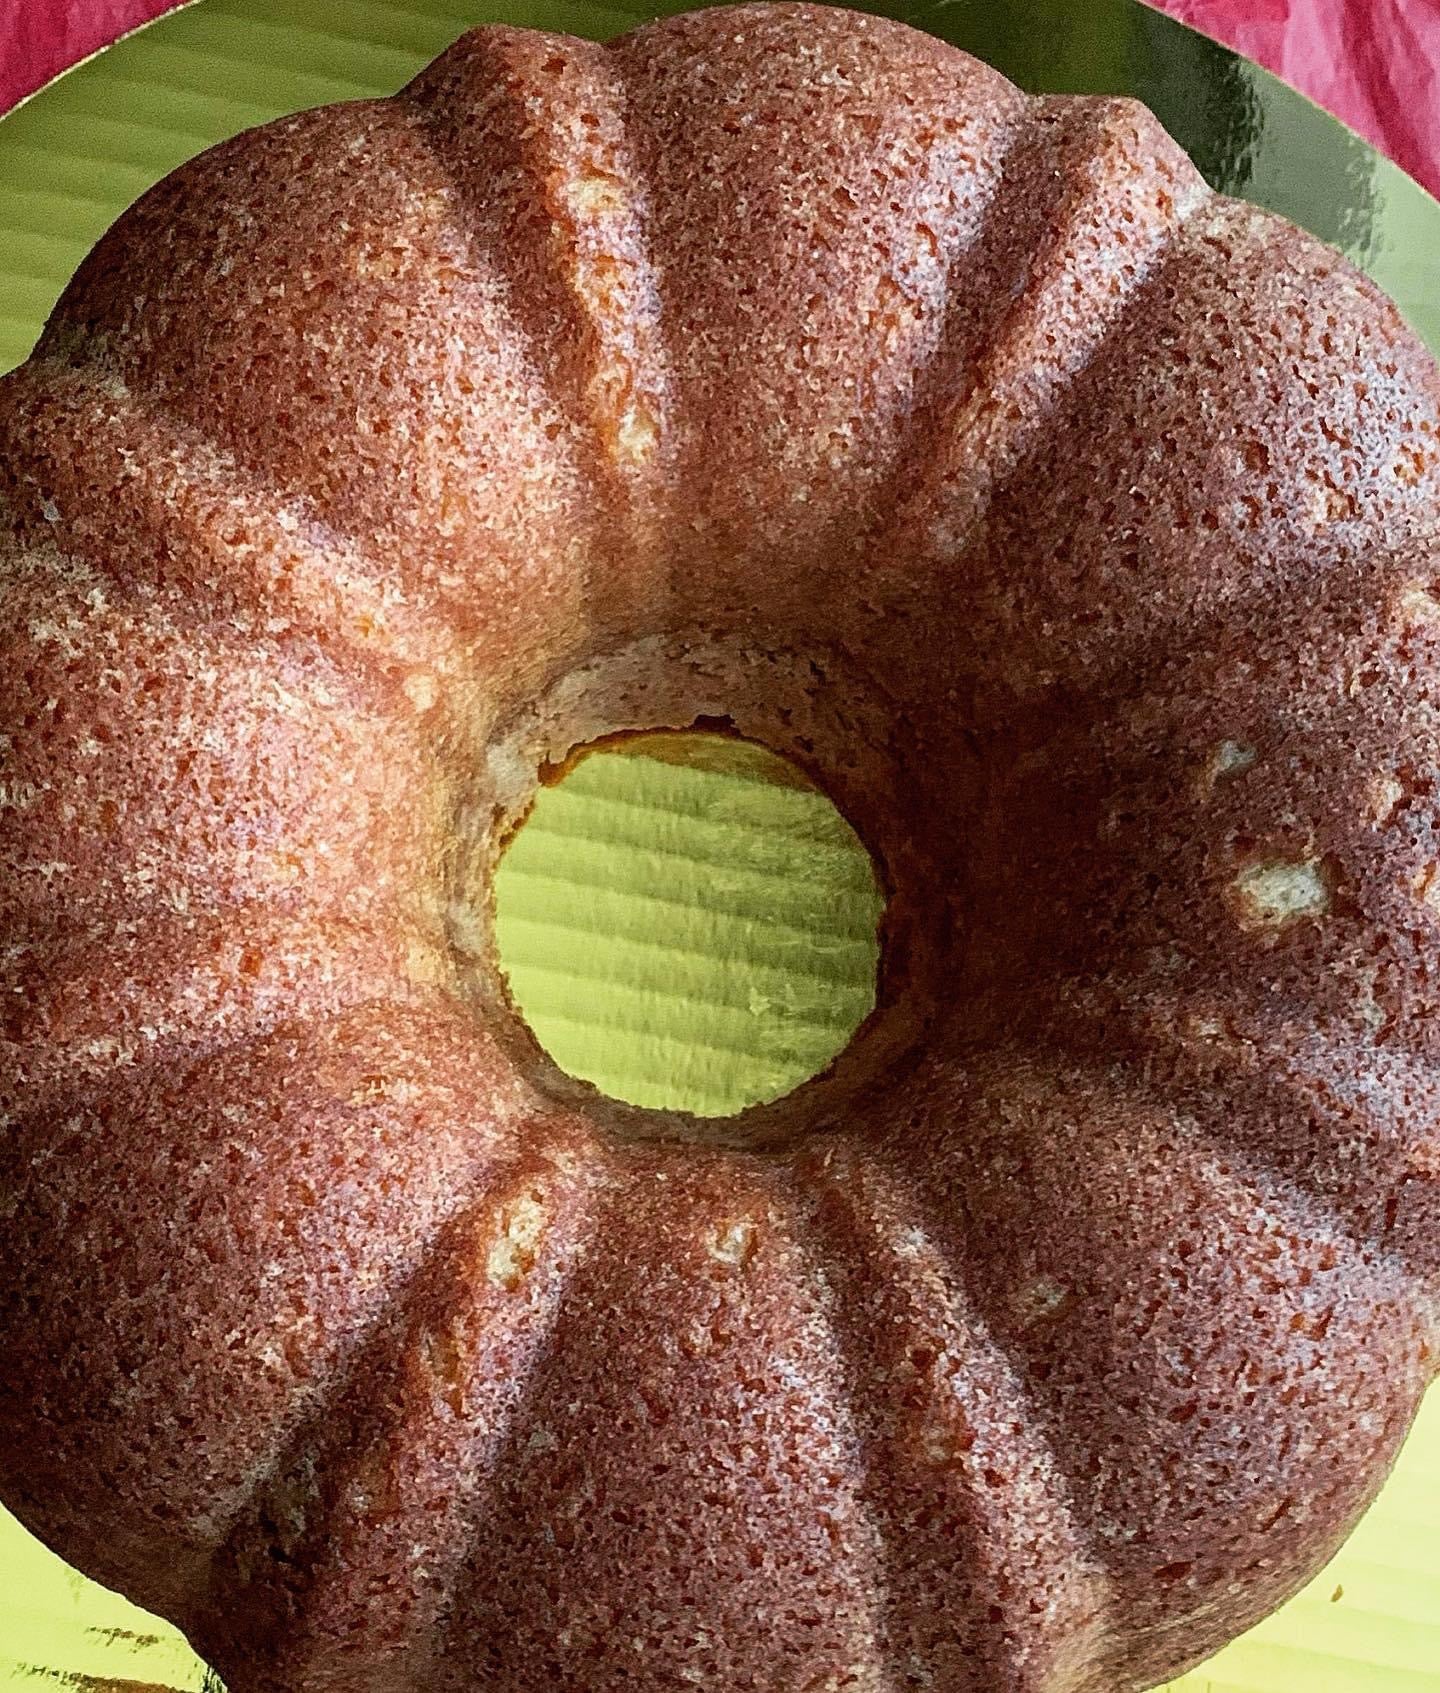 Gourmet “Main Squeeze” Bundt Cakes - 10 inch